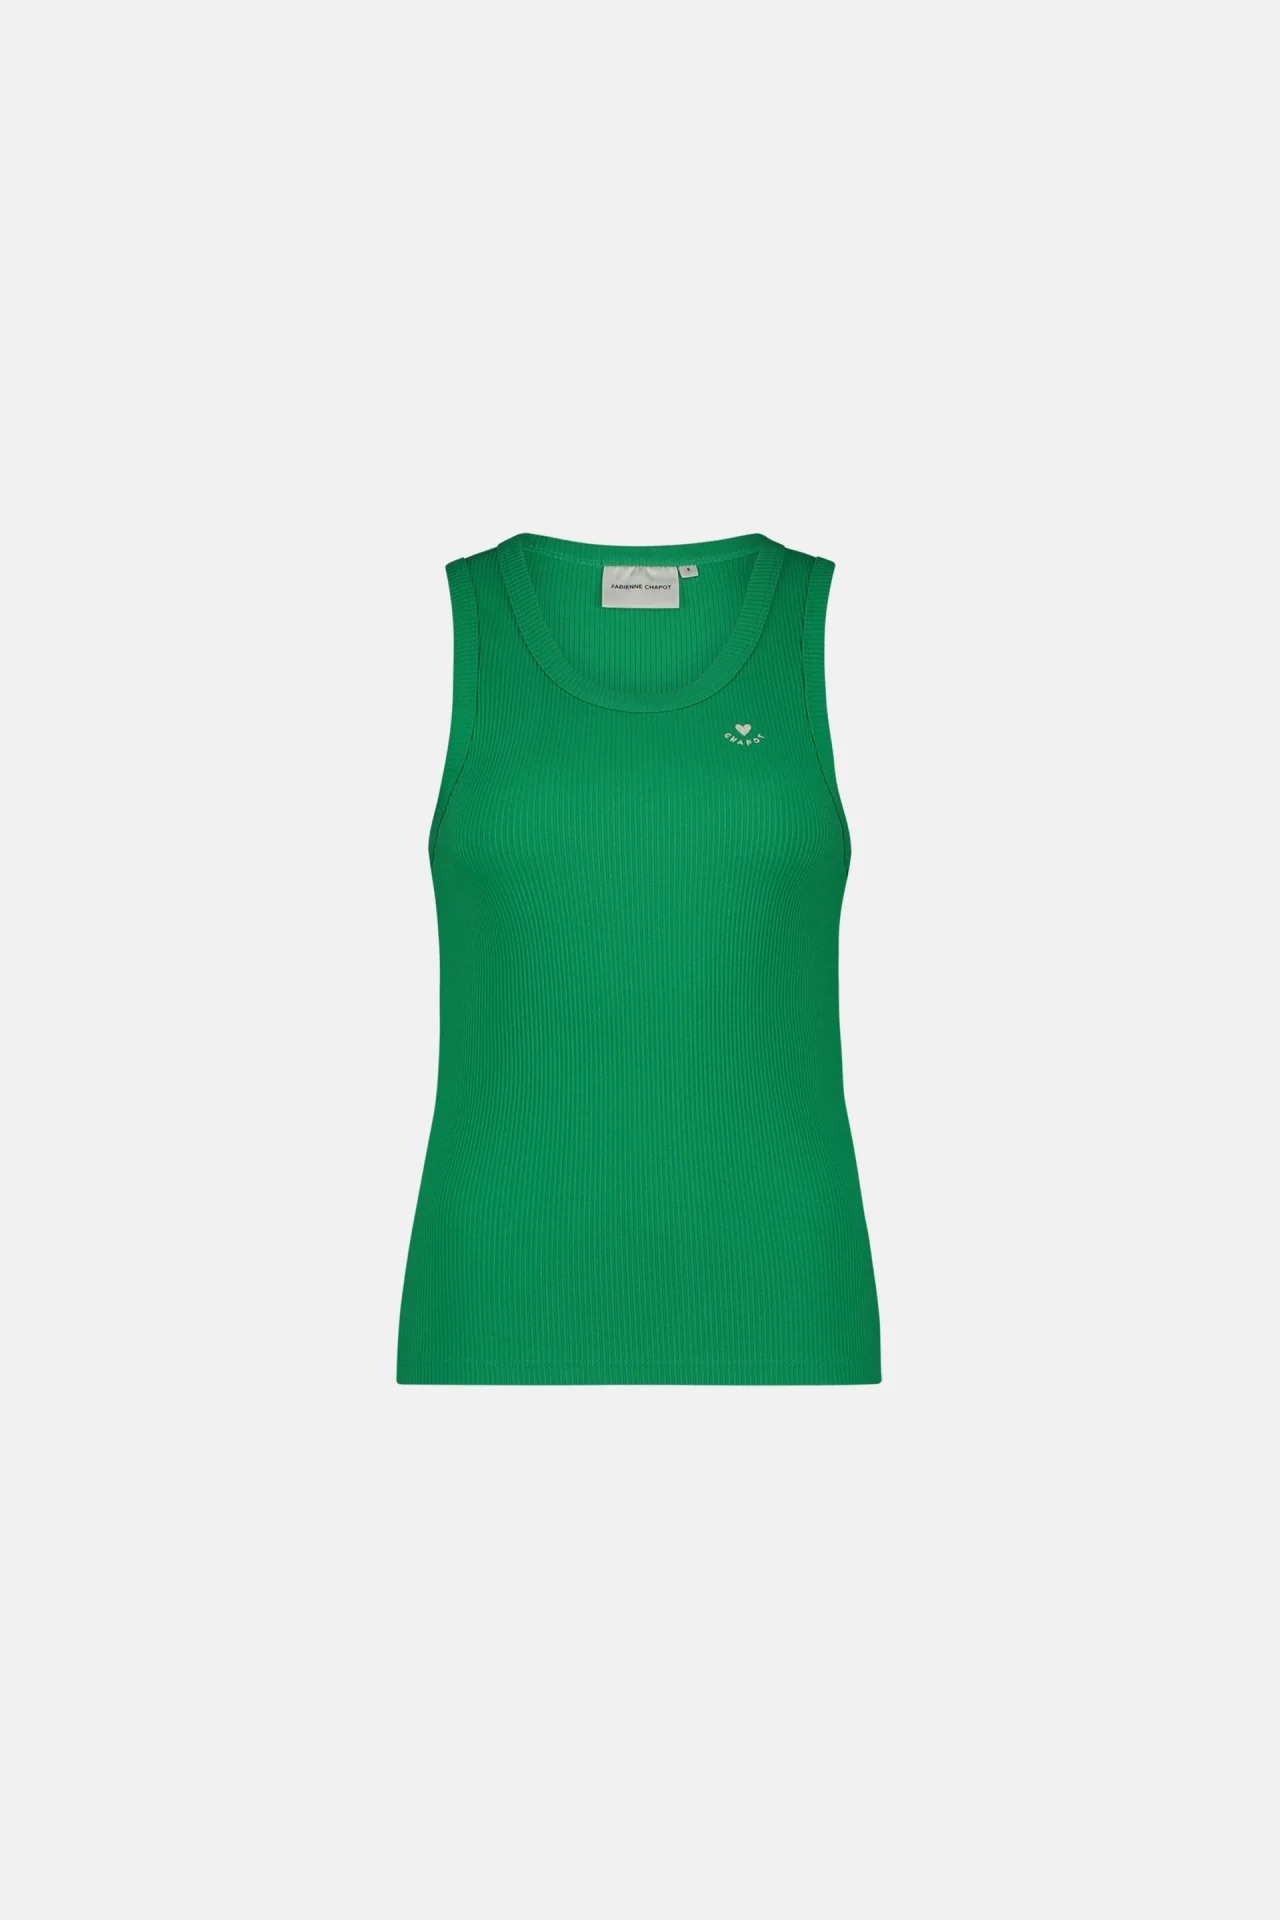 Groene dames top Fabienne Chapot - Tanja jersey